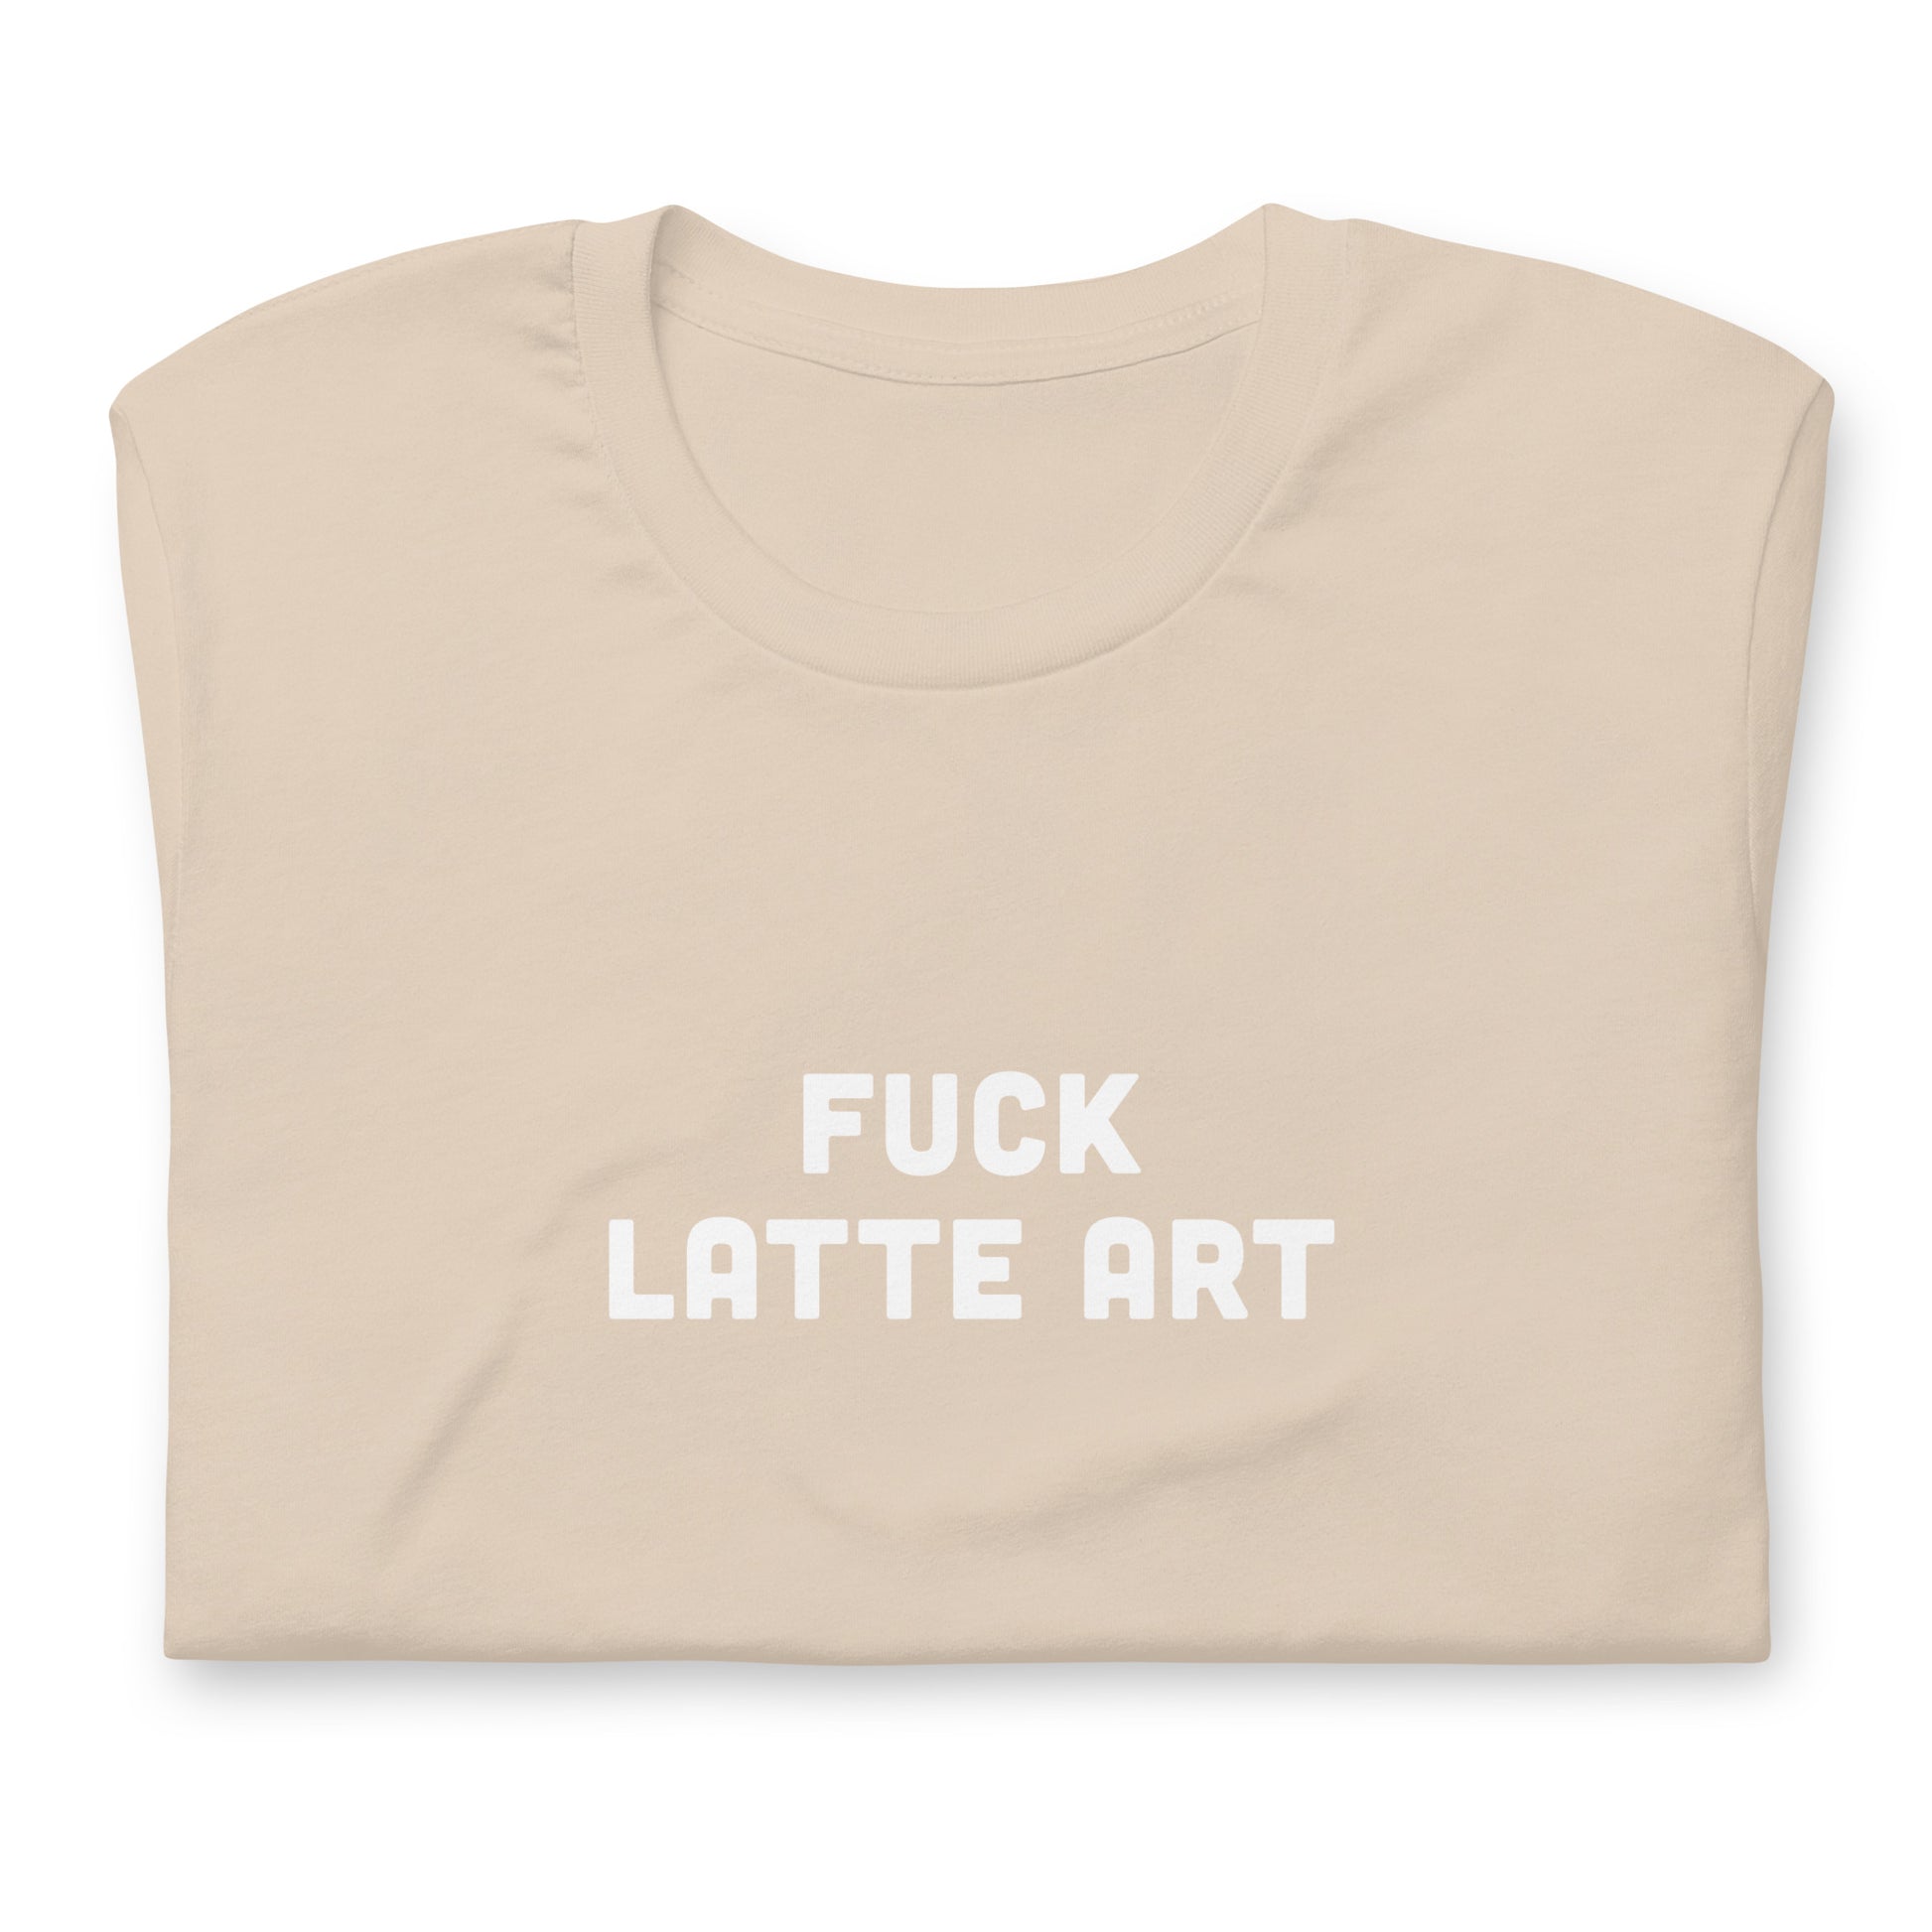 Fuck Latte Art T-Shirt Size L Color Asphalt